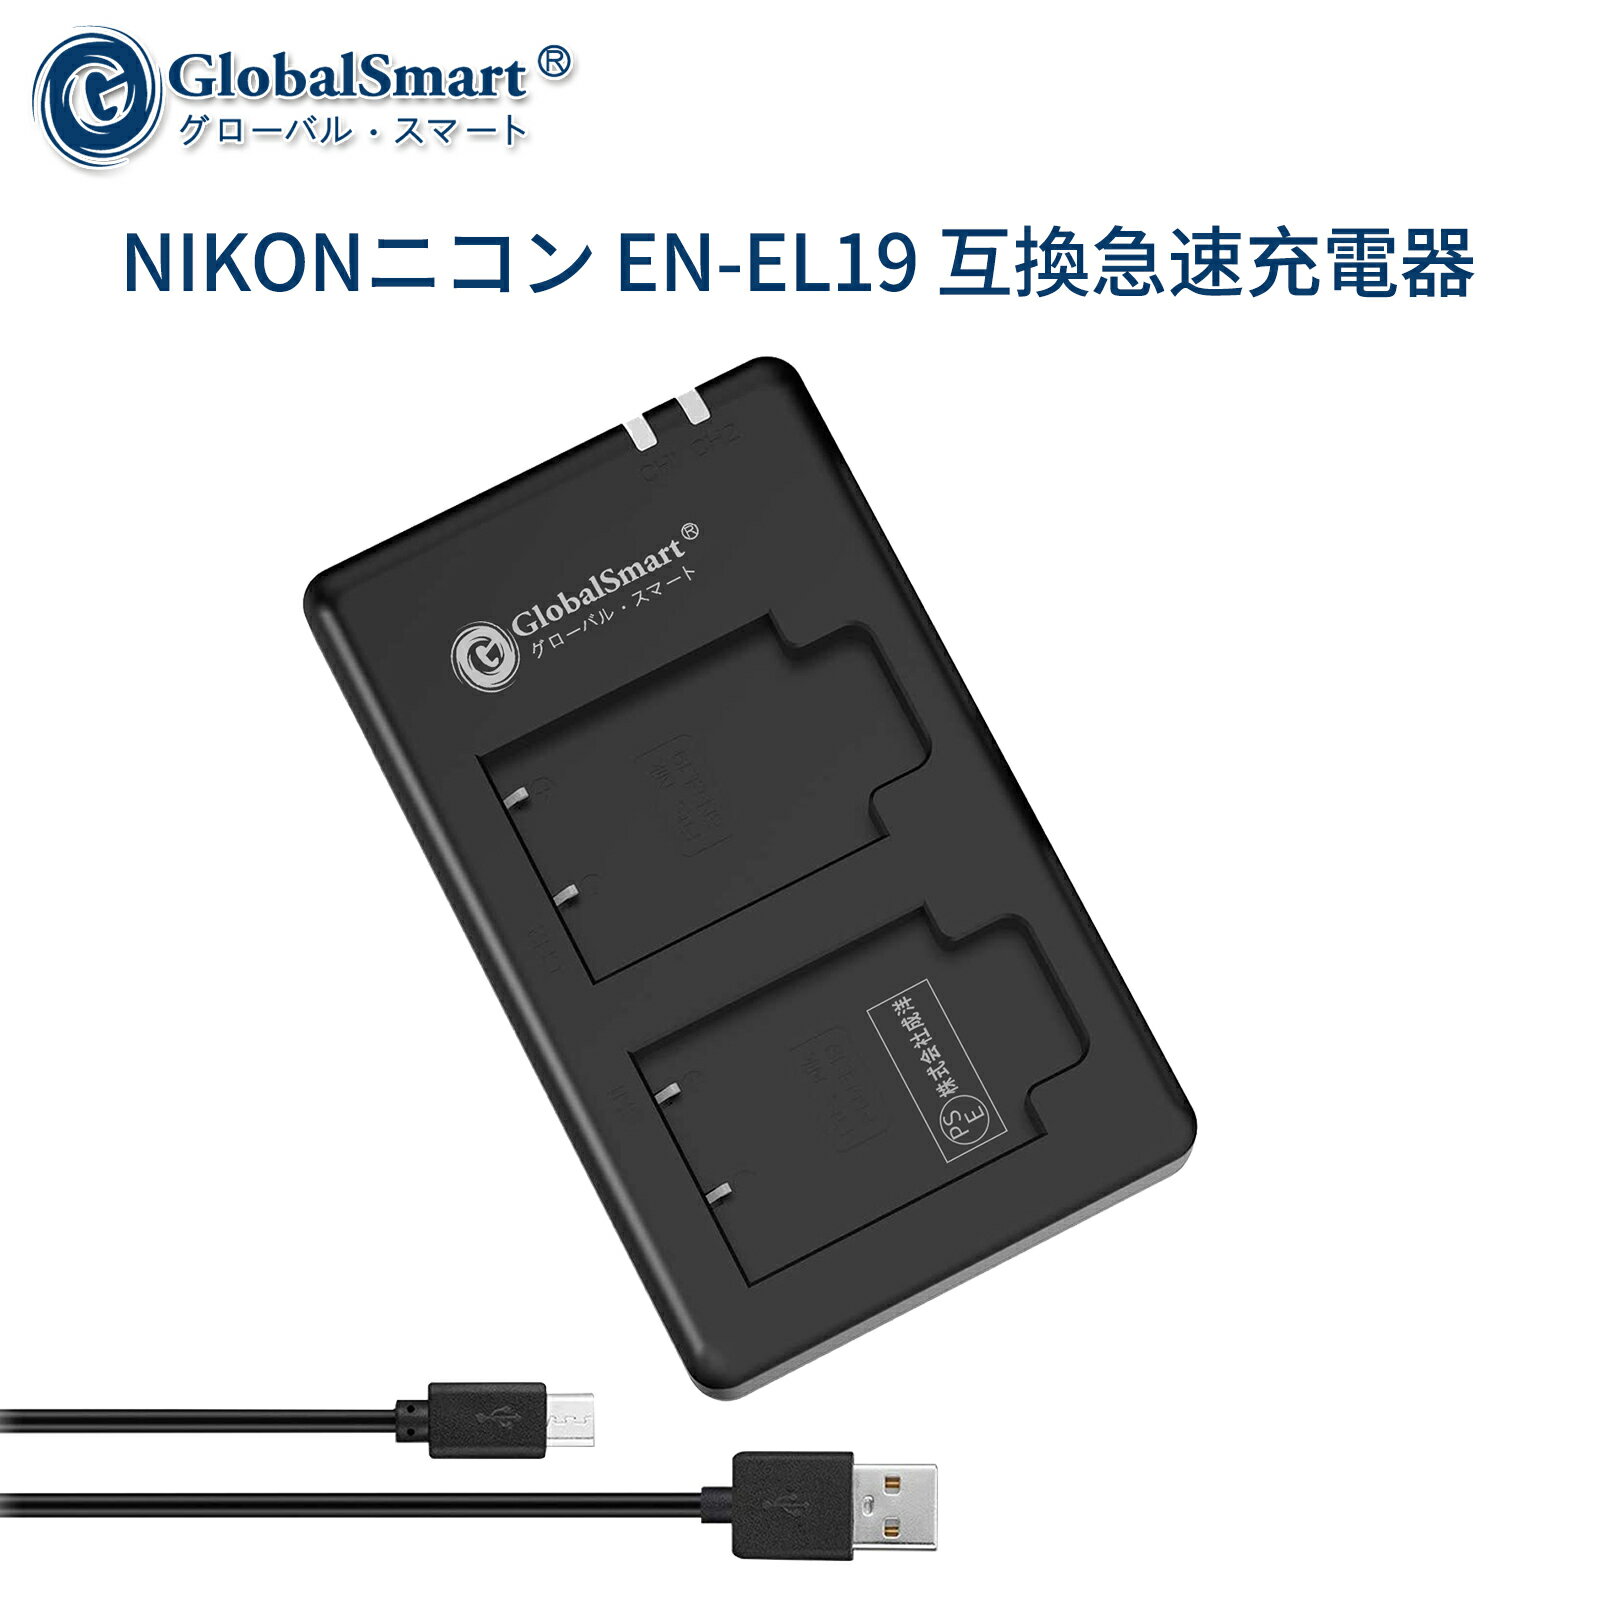 【1年保証】 NIKONニコン EN-EL19 互換急速充電器USBチャージャー 【PSE認定済】 カメラバッテリー互換チャージャー【GlobalSmart】【日本国内倉庫発送】【送料無料】